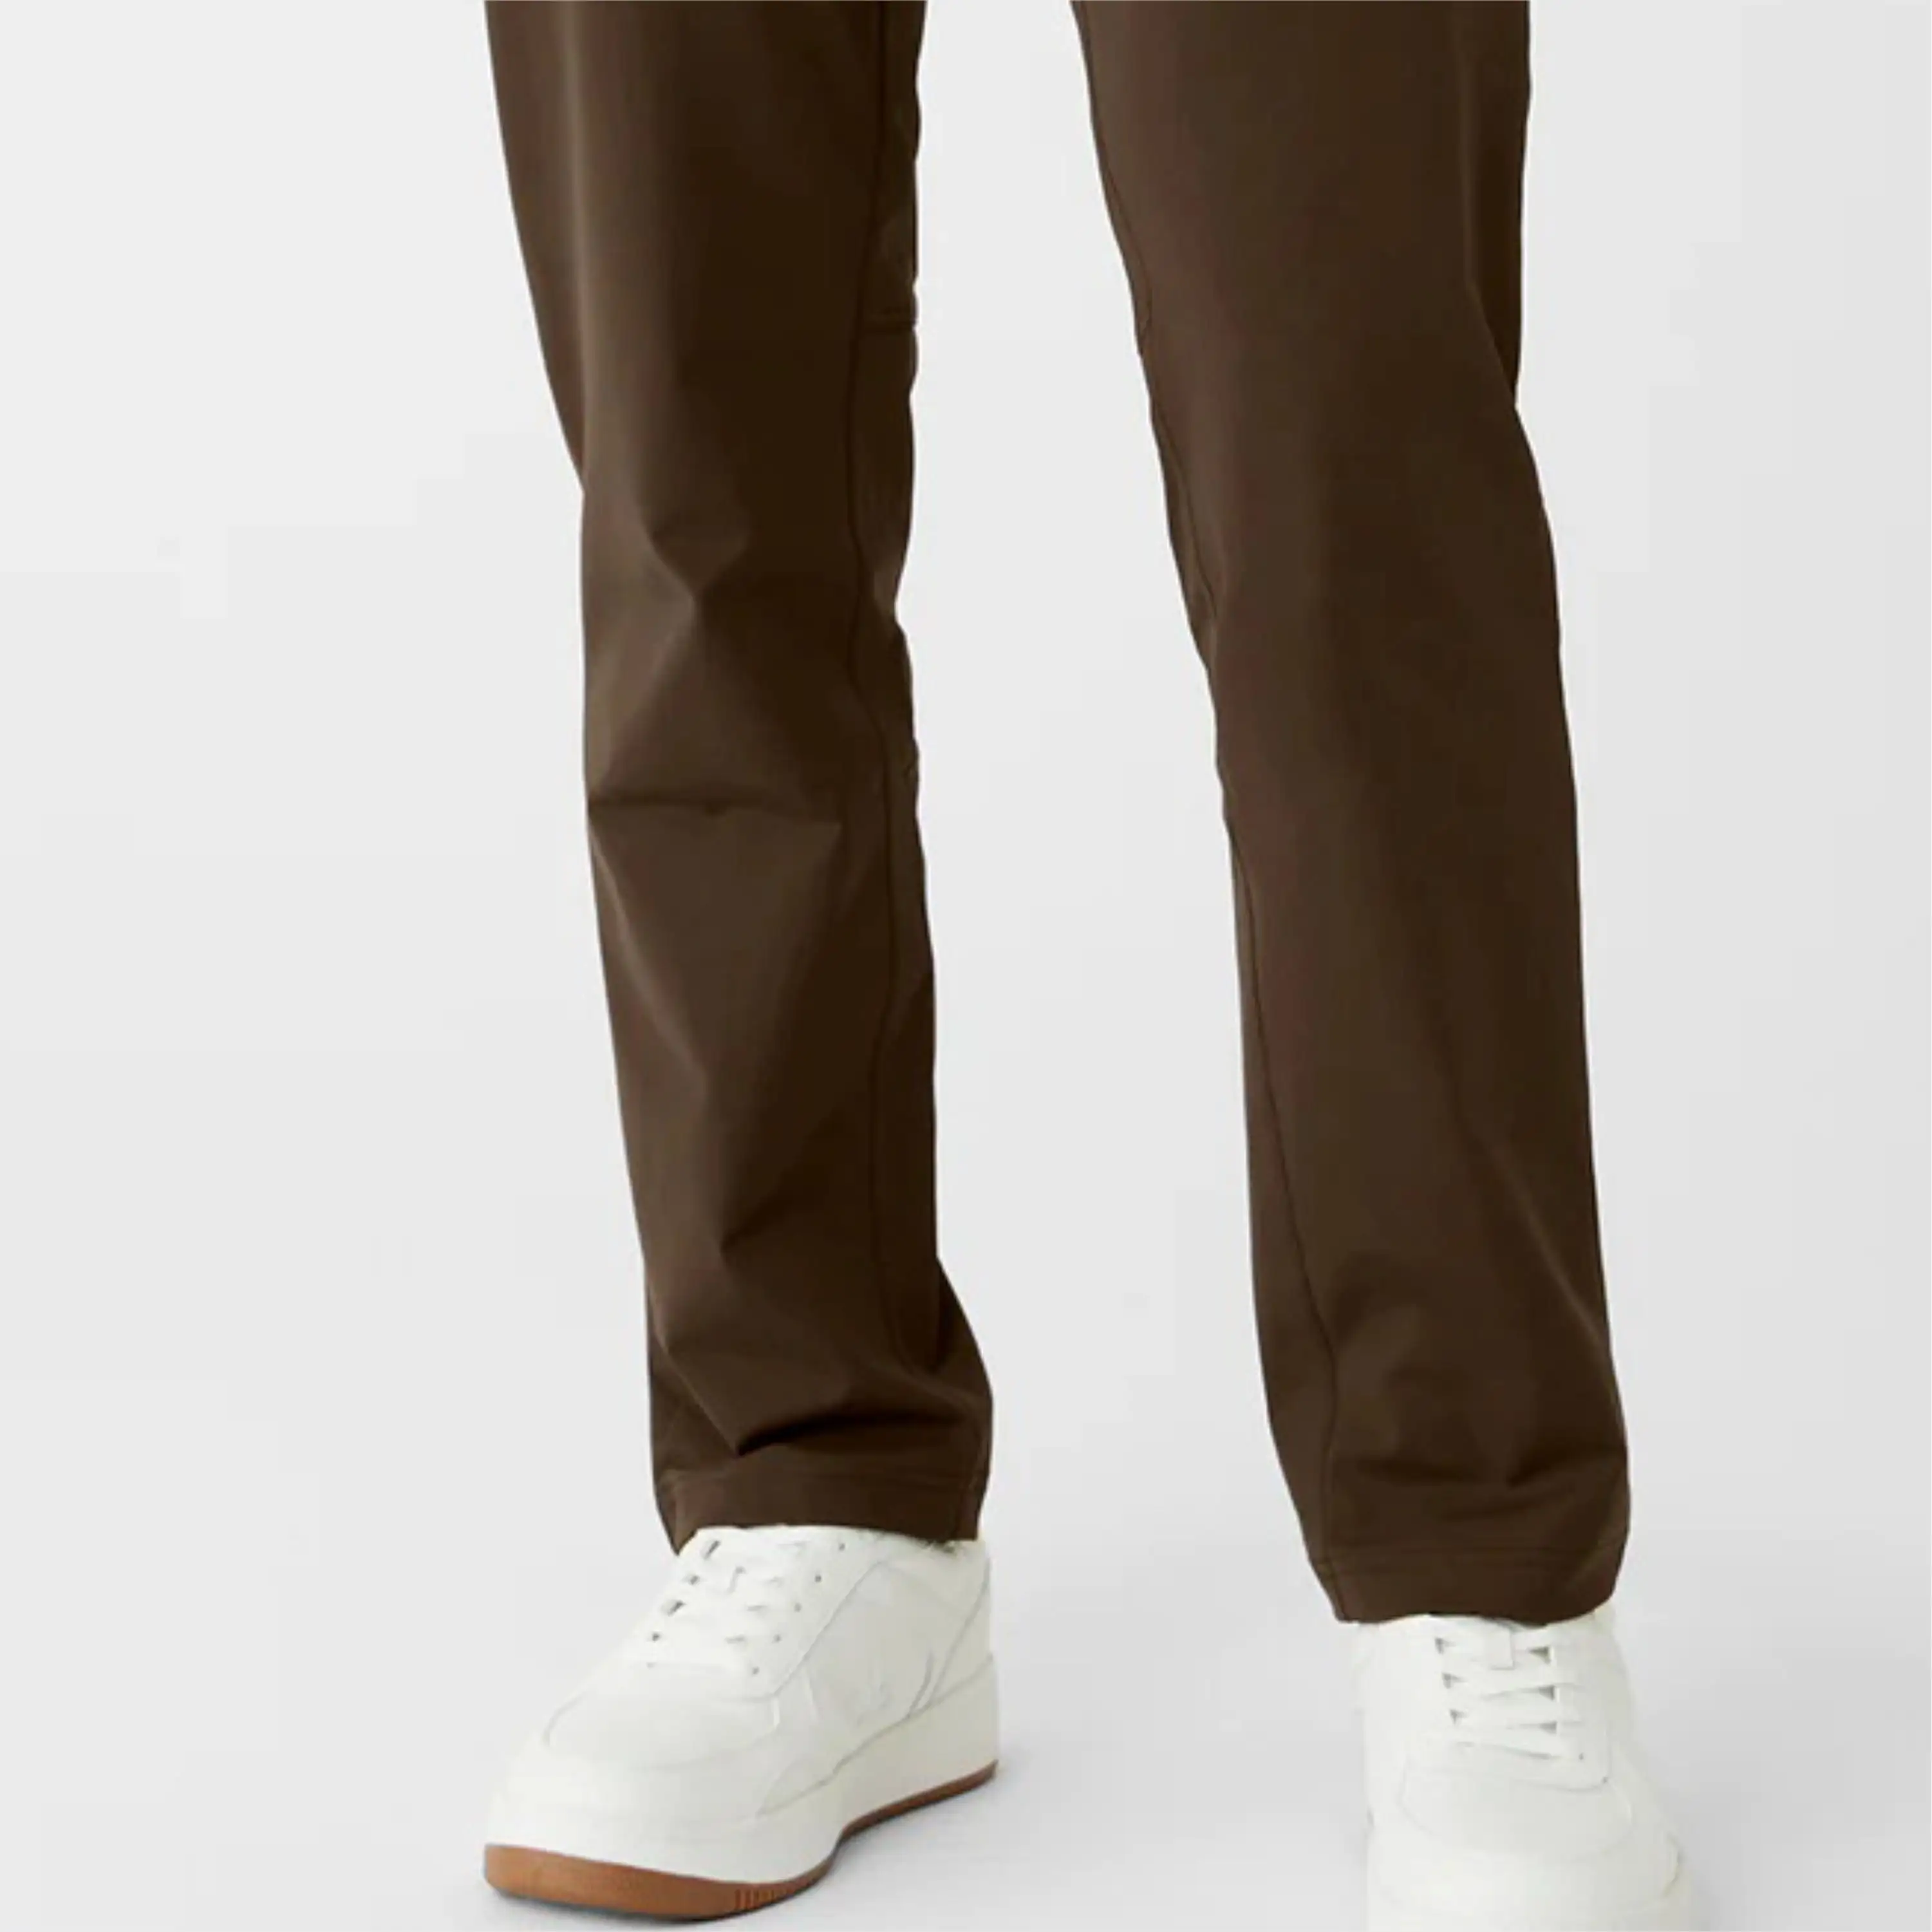 Pantalon habillé Gentleman Essential-Fermeture classique à boutons, style plat sur le devant, parfait pour les événements formels